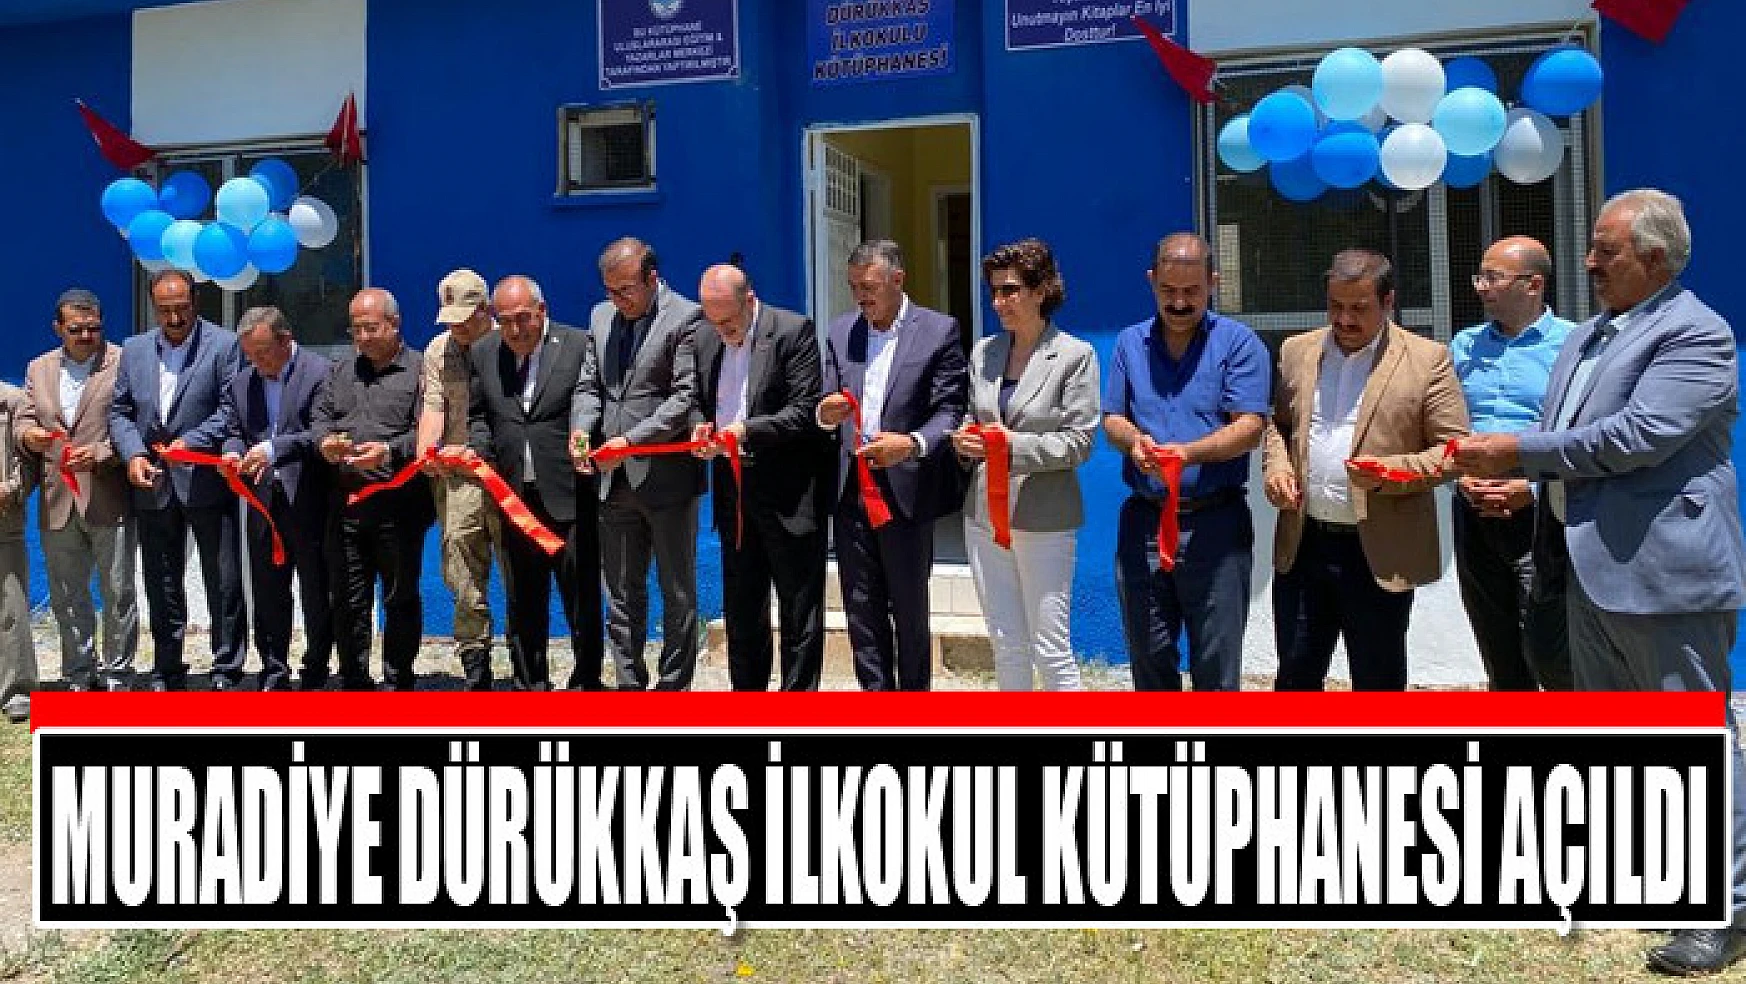 Muradiye Dürükkaş İlkokul Kütüphanesi açıldı